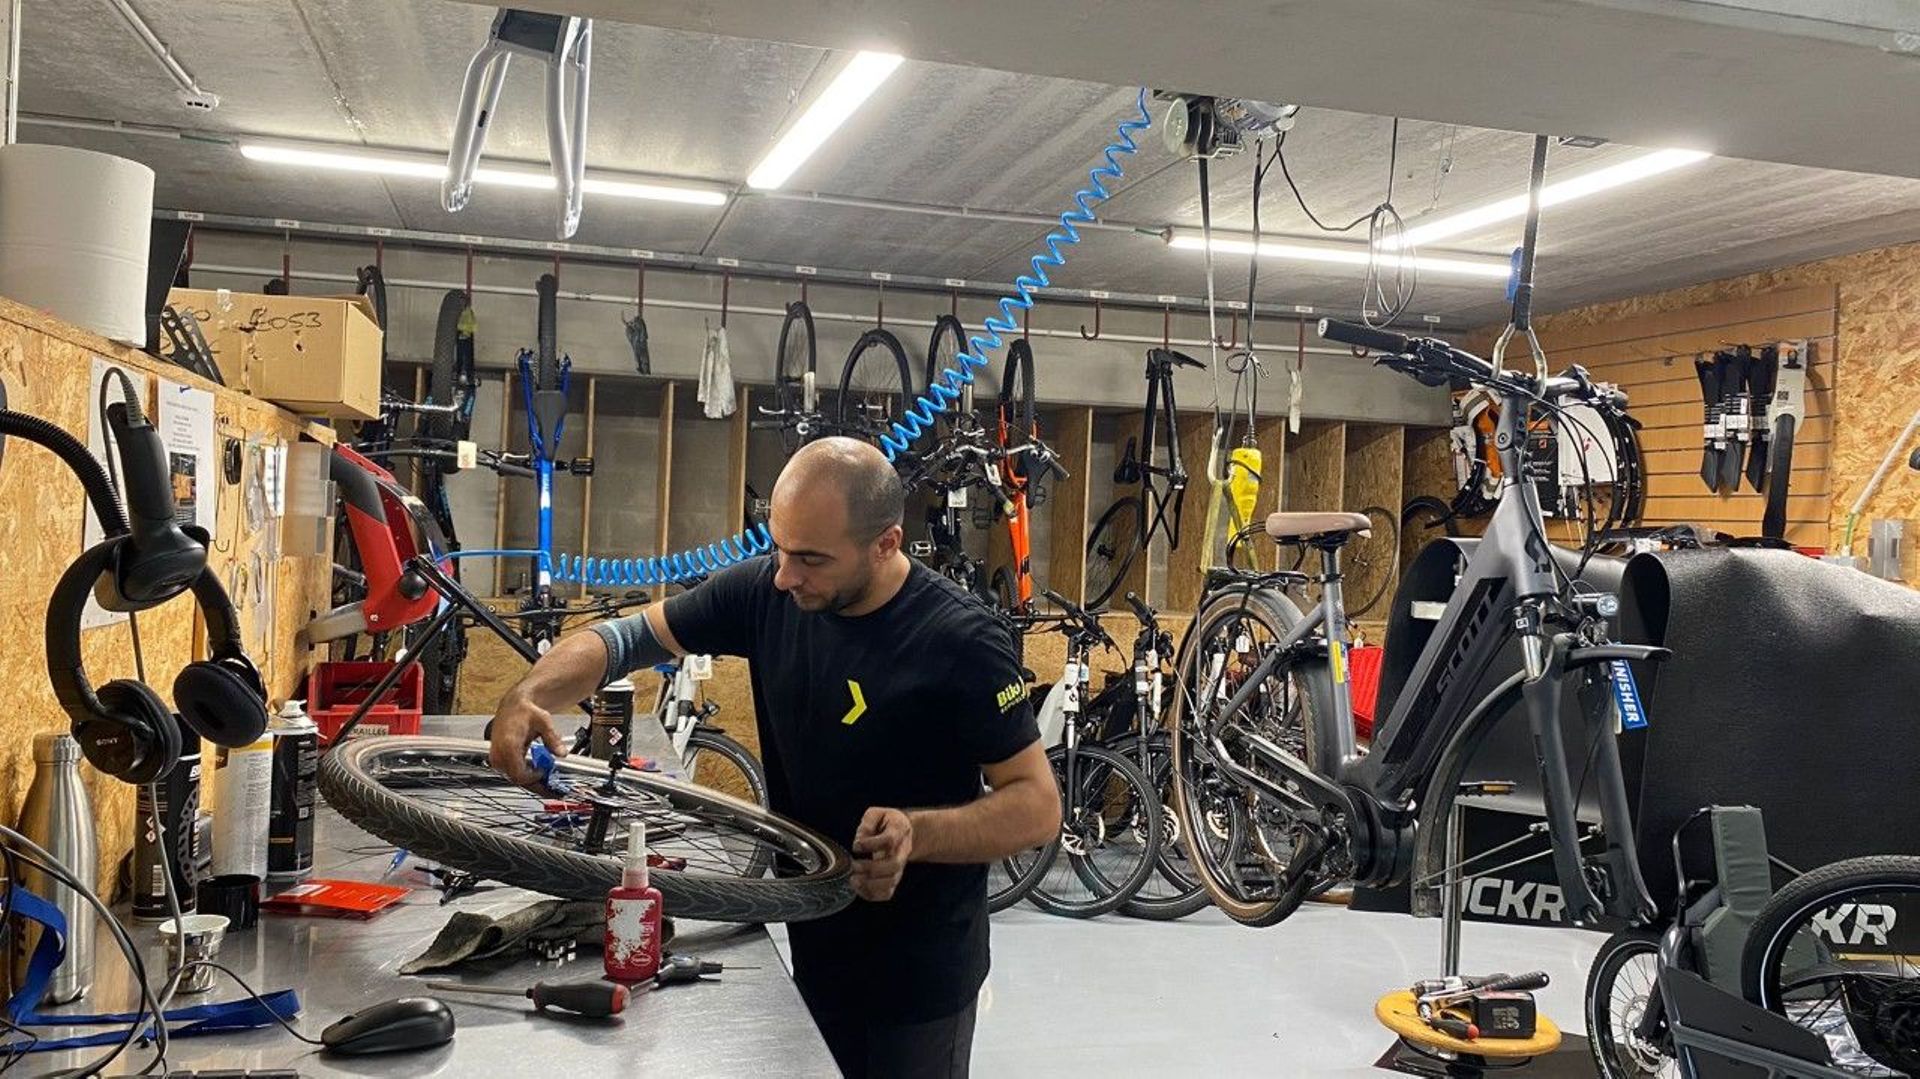 Colruyt acquista un’azienda di biciclette a Bruxelles e mira a creare da 50 a 60 negozi in Belgio: quale futuro per i rivenditori di biciclette?